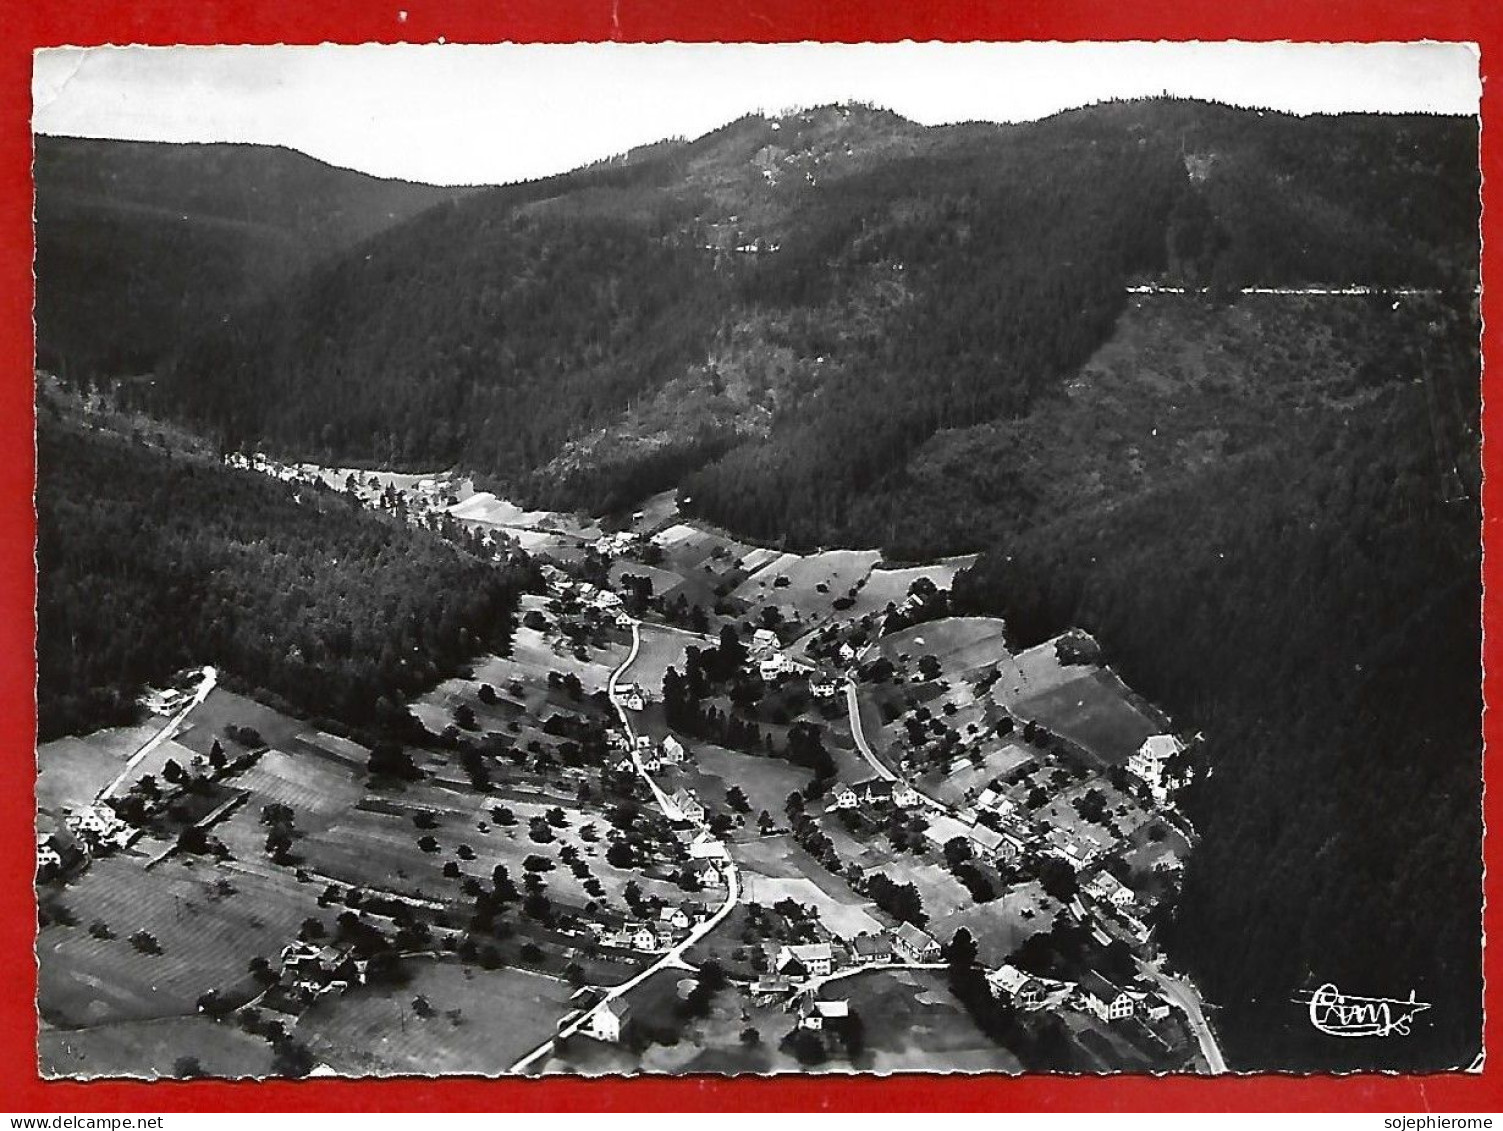 Wangenbourg-Engenthal (67) Vue Panoramique Aérienne 2scans 17-09-1964 - Autres & Non Classés